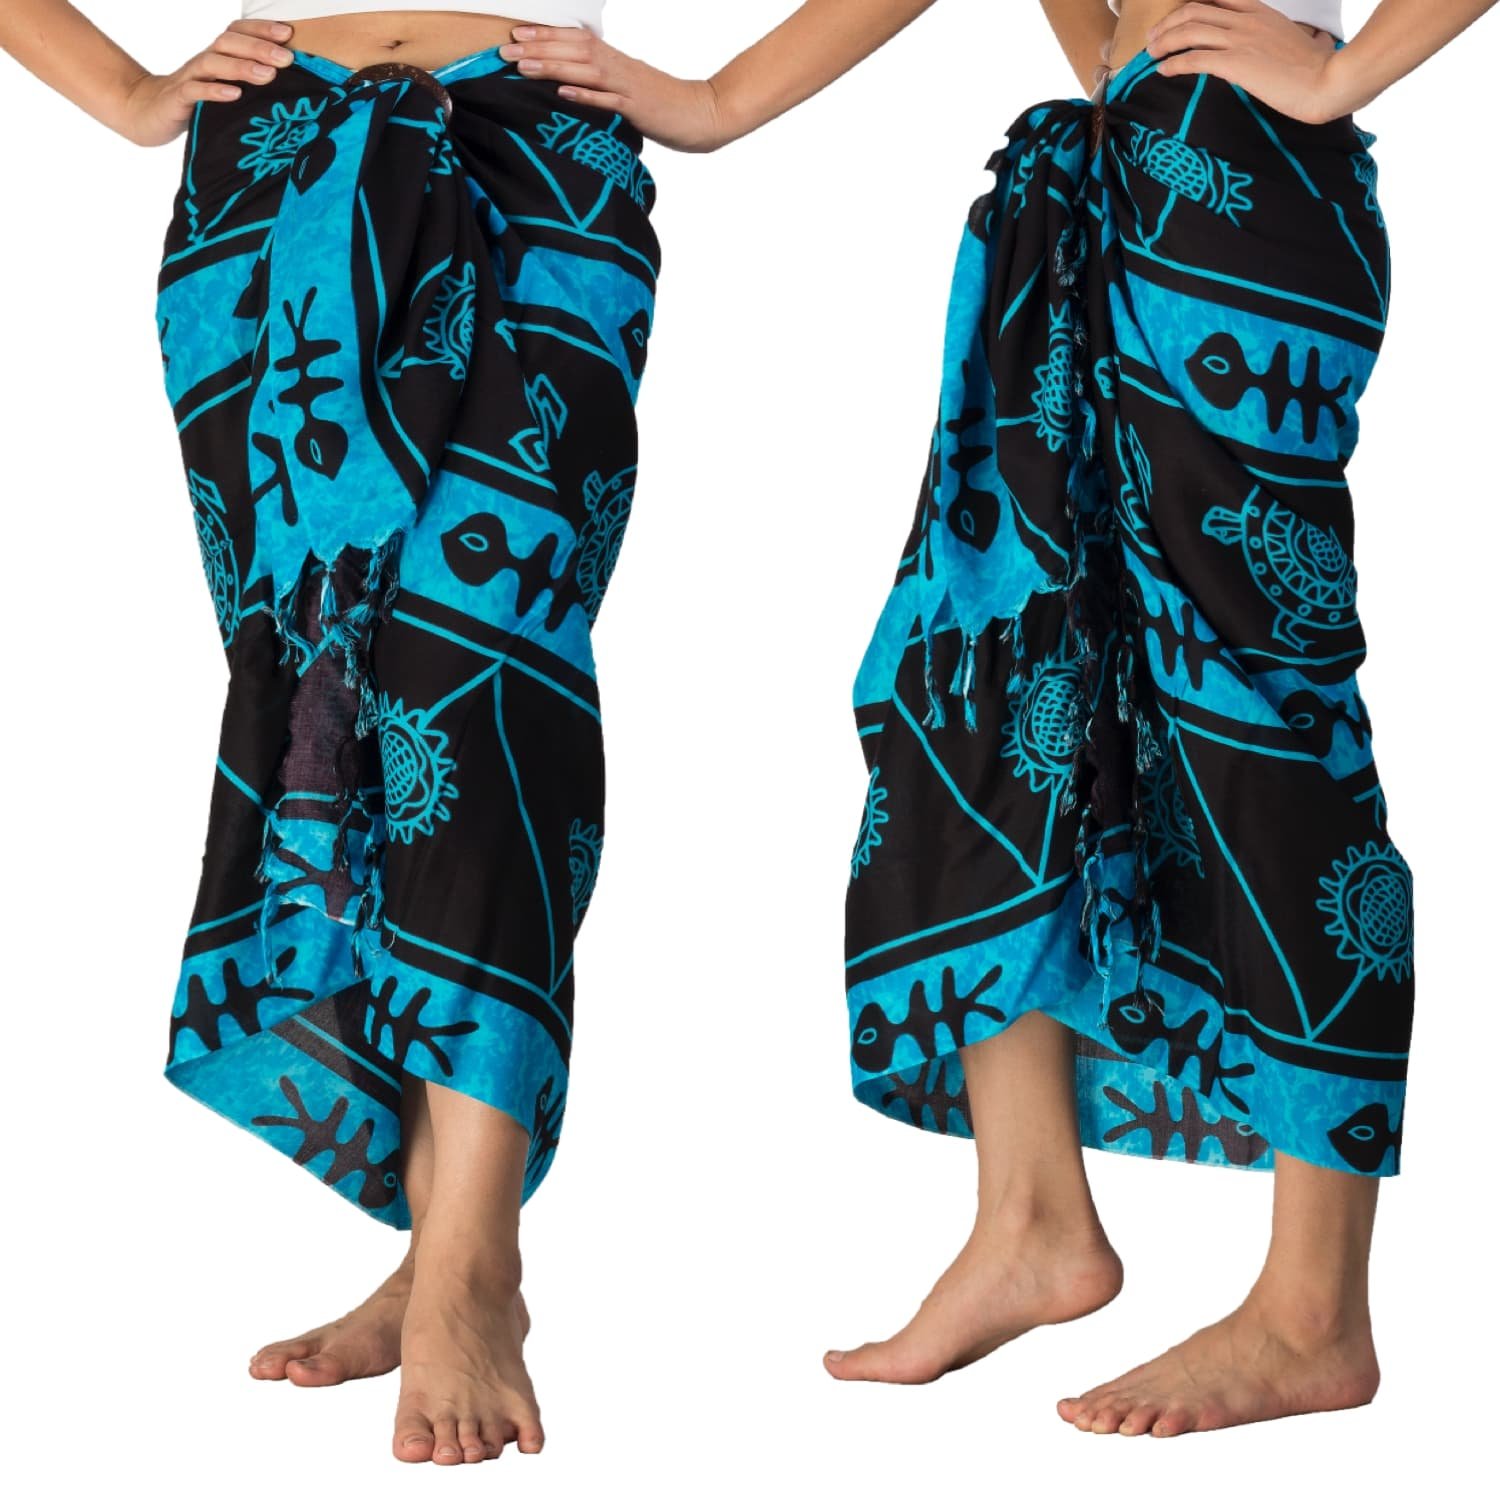 Юбка саронг. Саронг Бали. Саронг одежда Индонезия. Саронг батик.